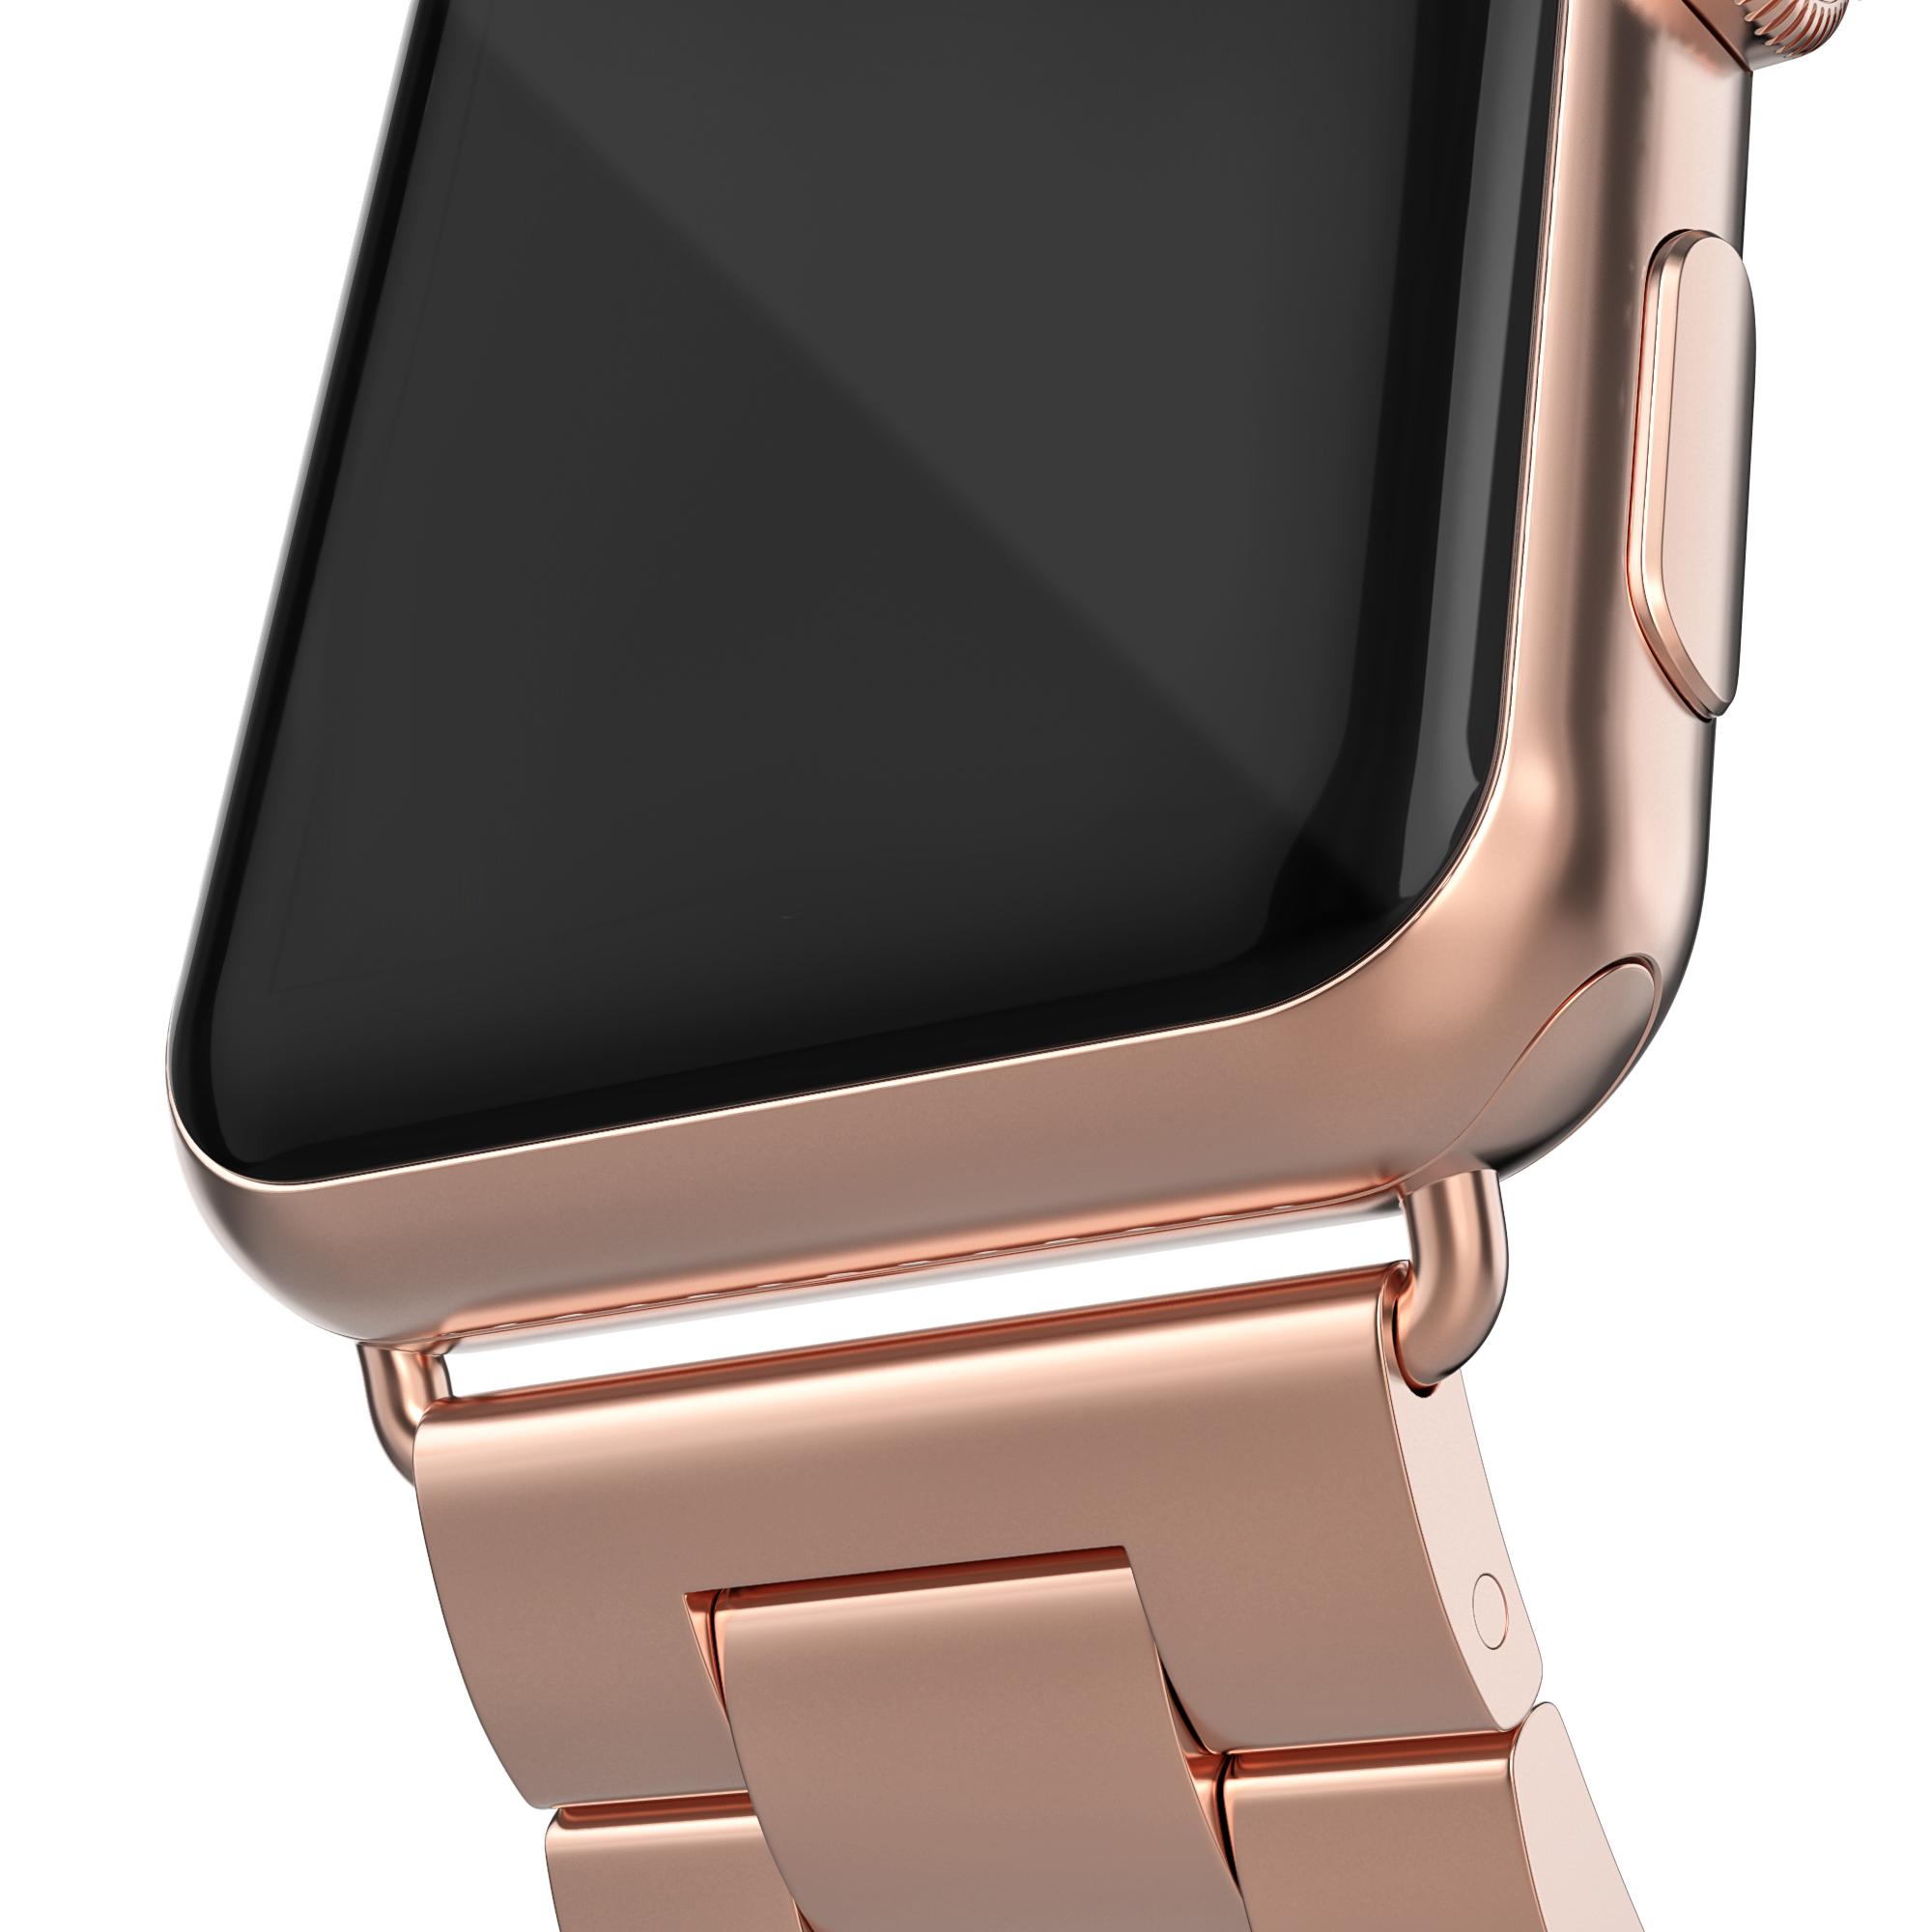 Correa de acero Apple Watch 45mm Series 9 oro rosa